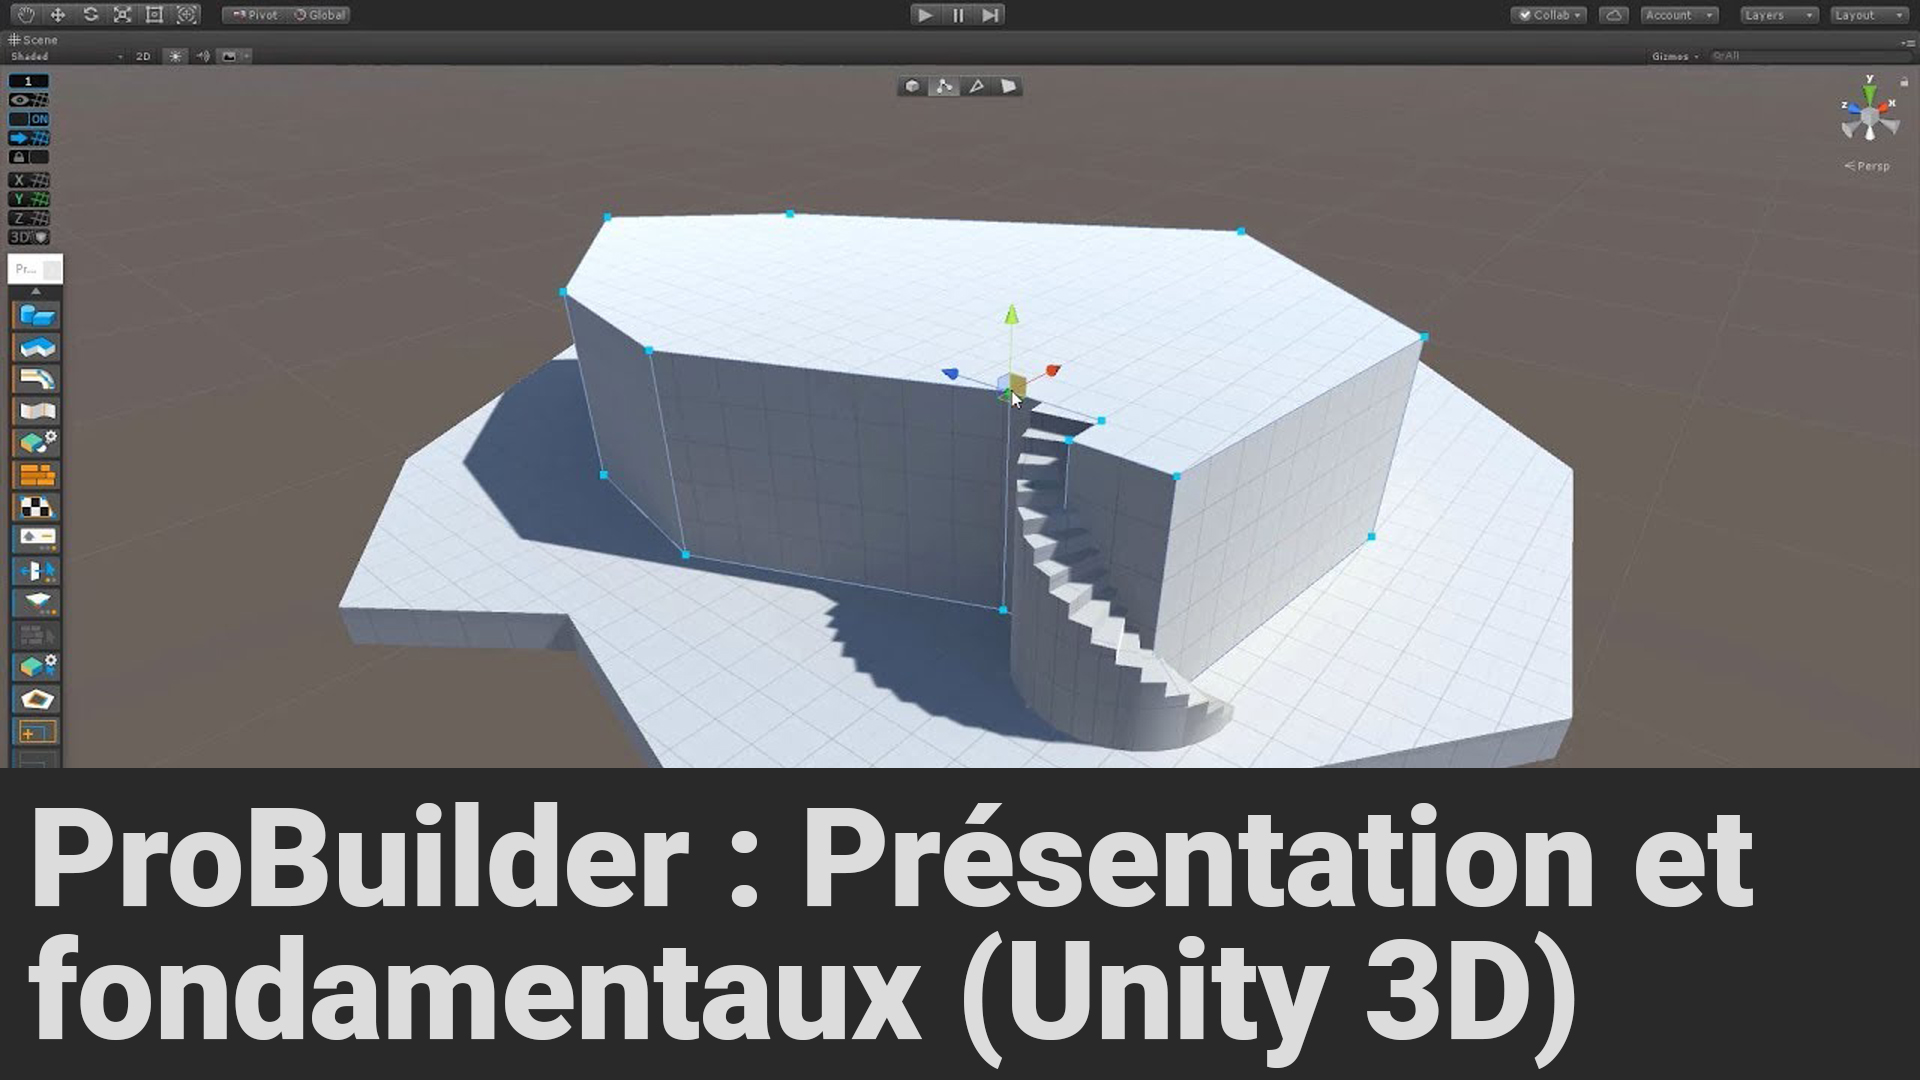 PrÃ©sentation et fondamentaux de ProBuilder (Unity 3D)